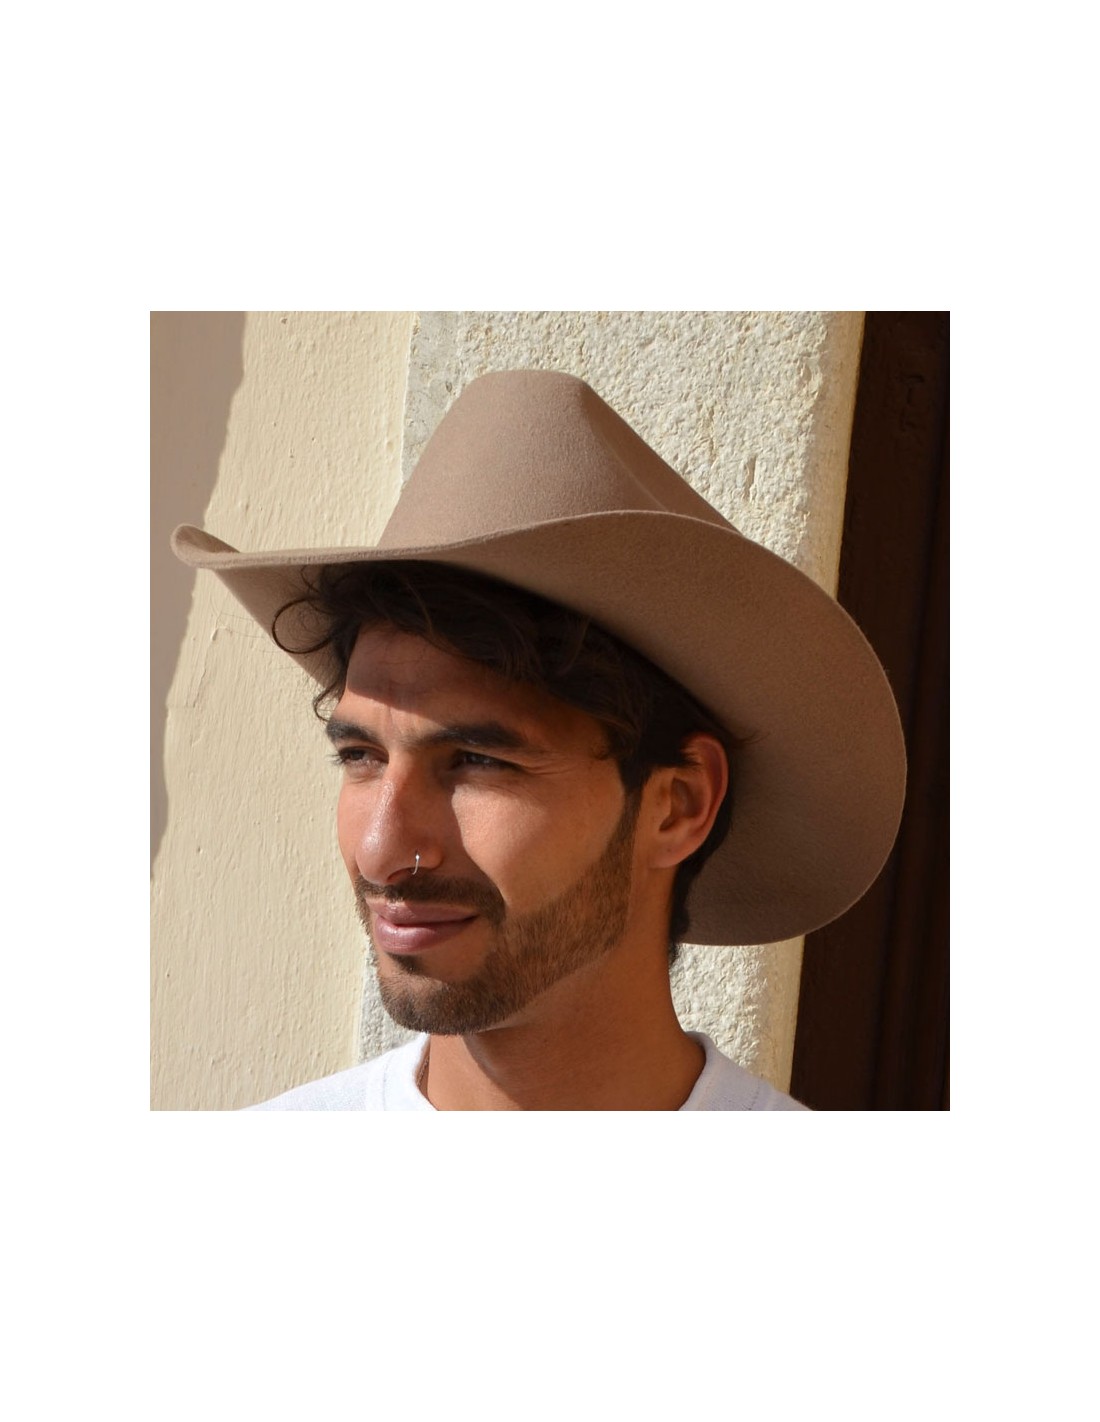 Bonnet Homme : achat en ligne de bonnets pour hommes - Chapellerie